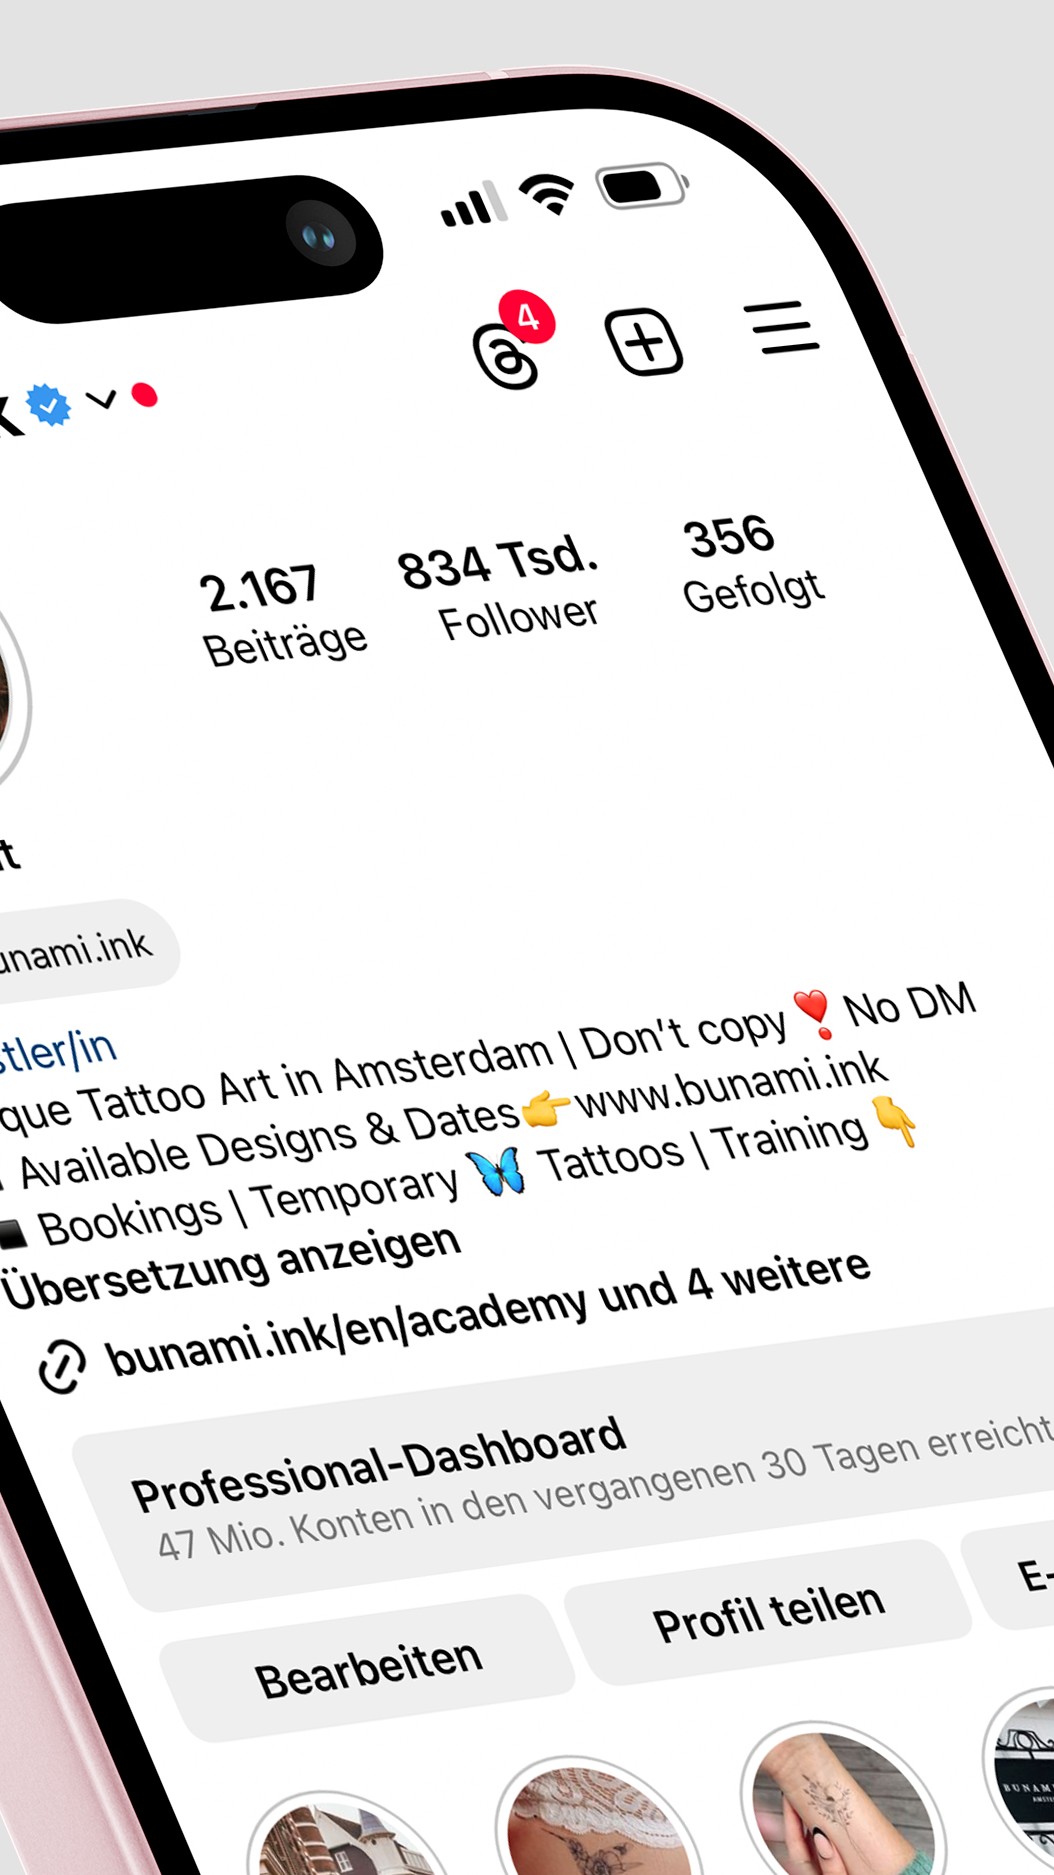 Bunami's Social Media Profiles – Instagram